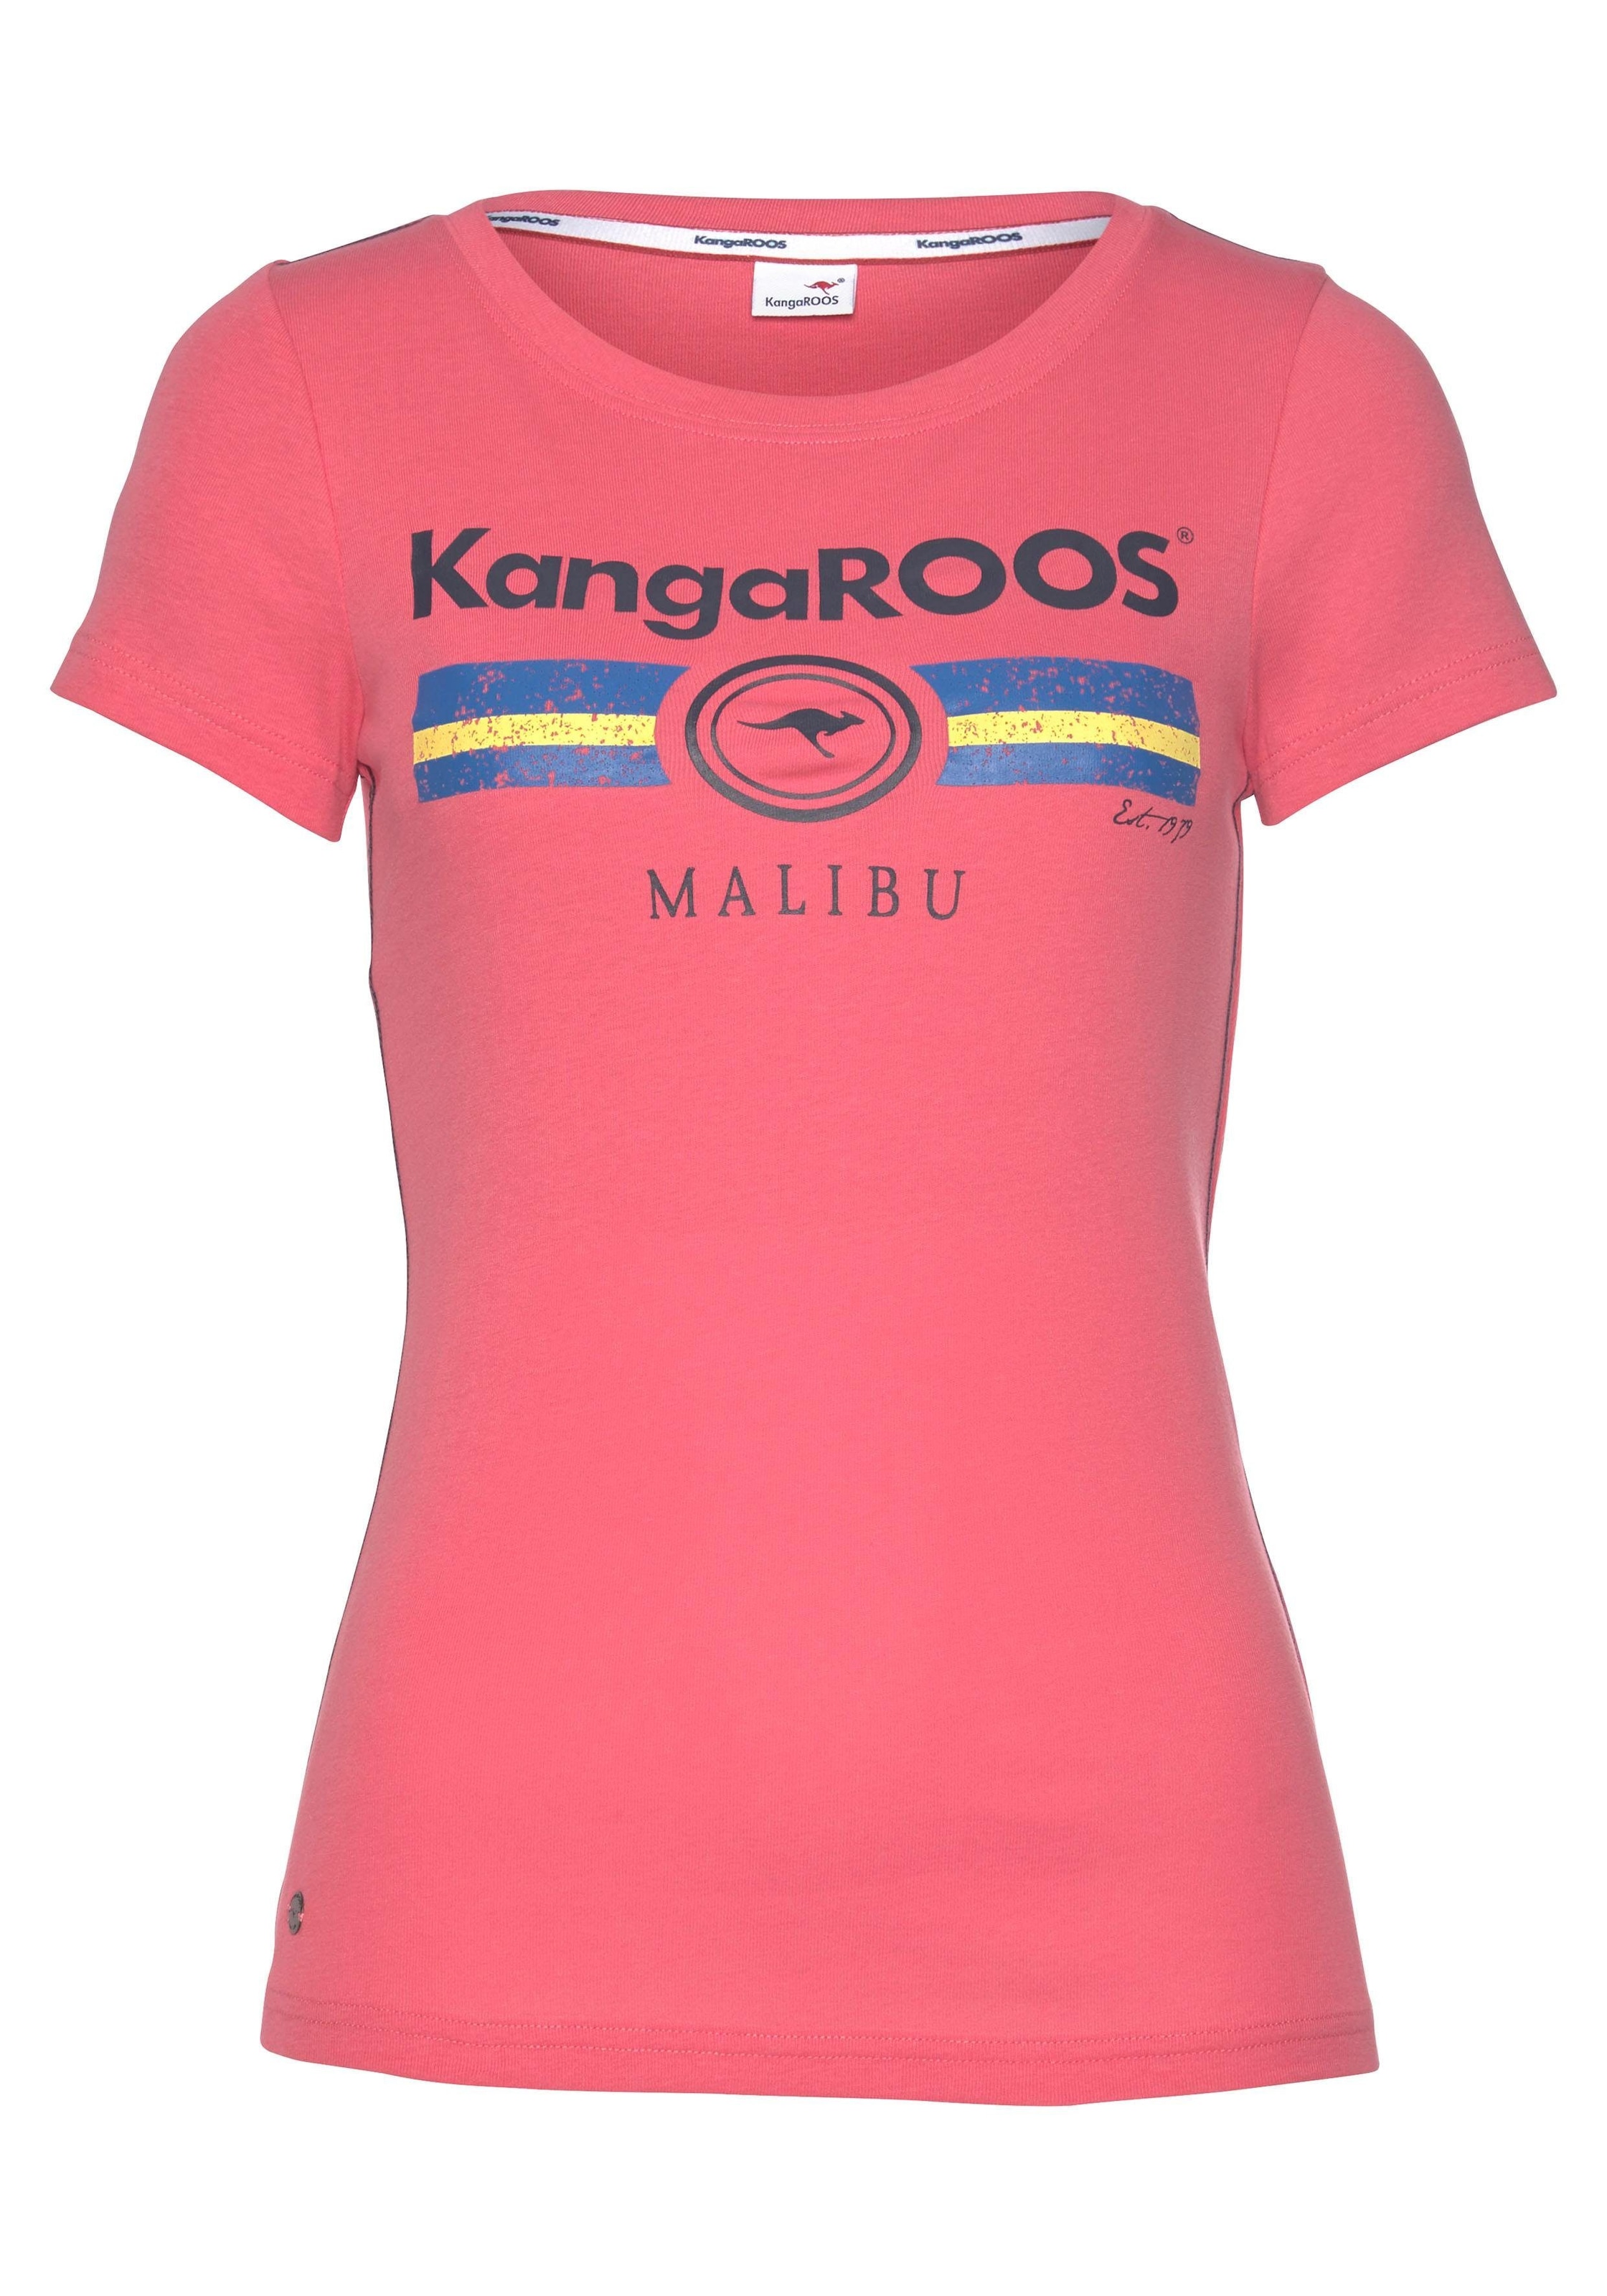 Label Print mit ♕ bei KangaROOS Metallic T-Shirt,